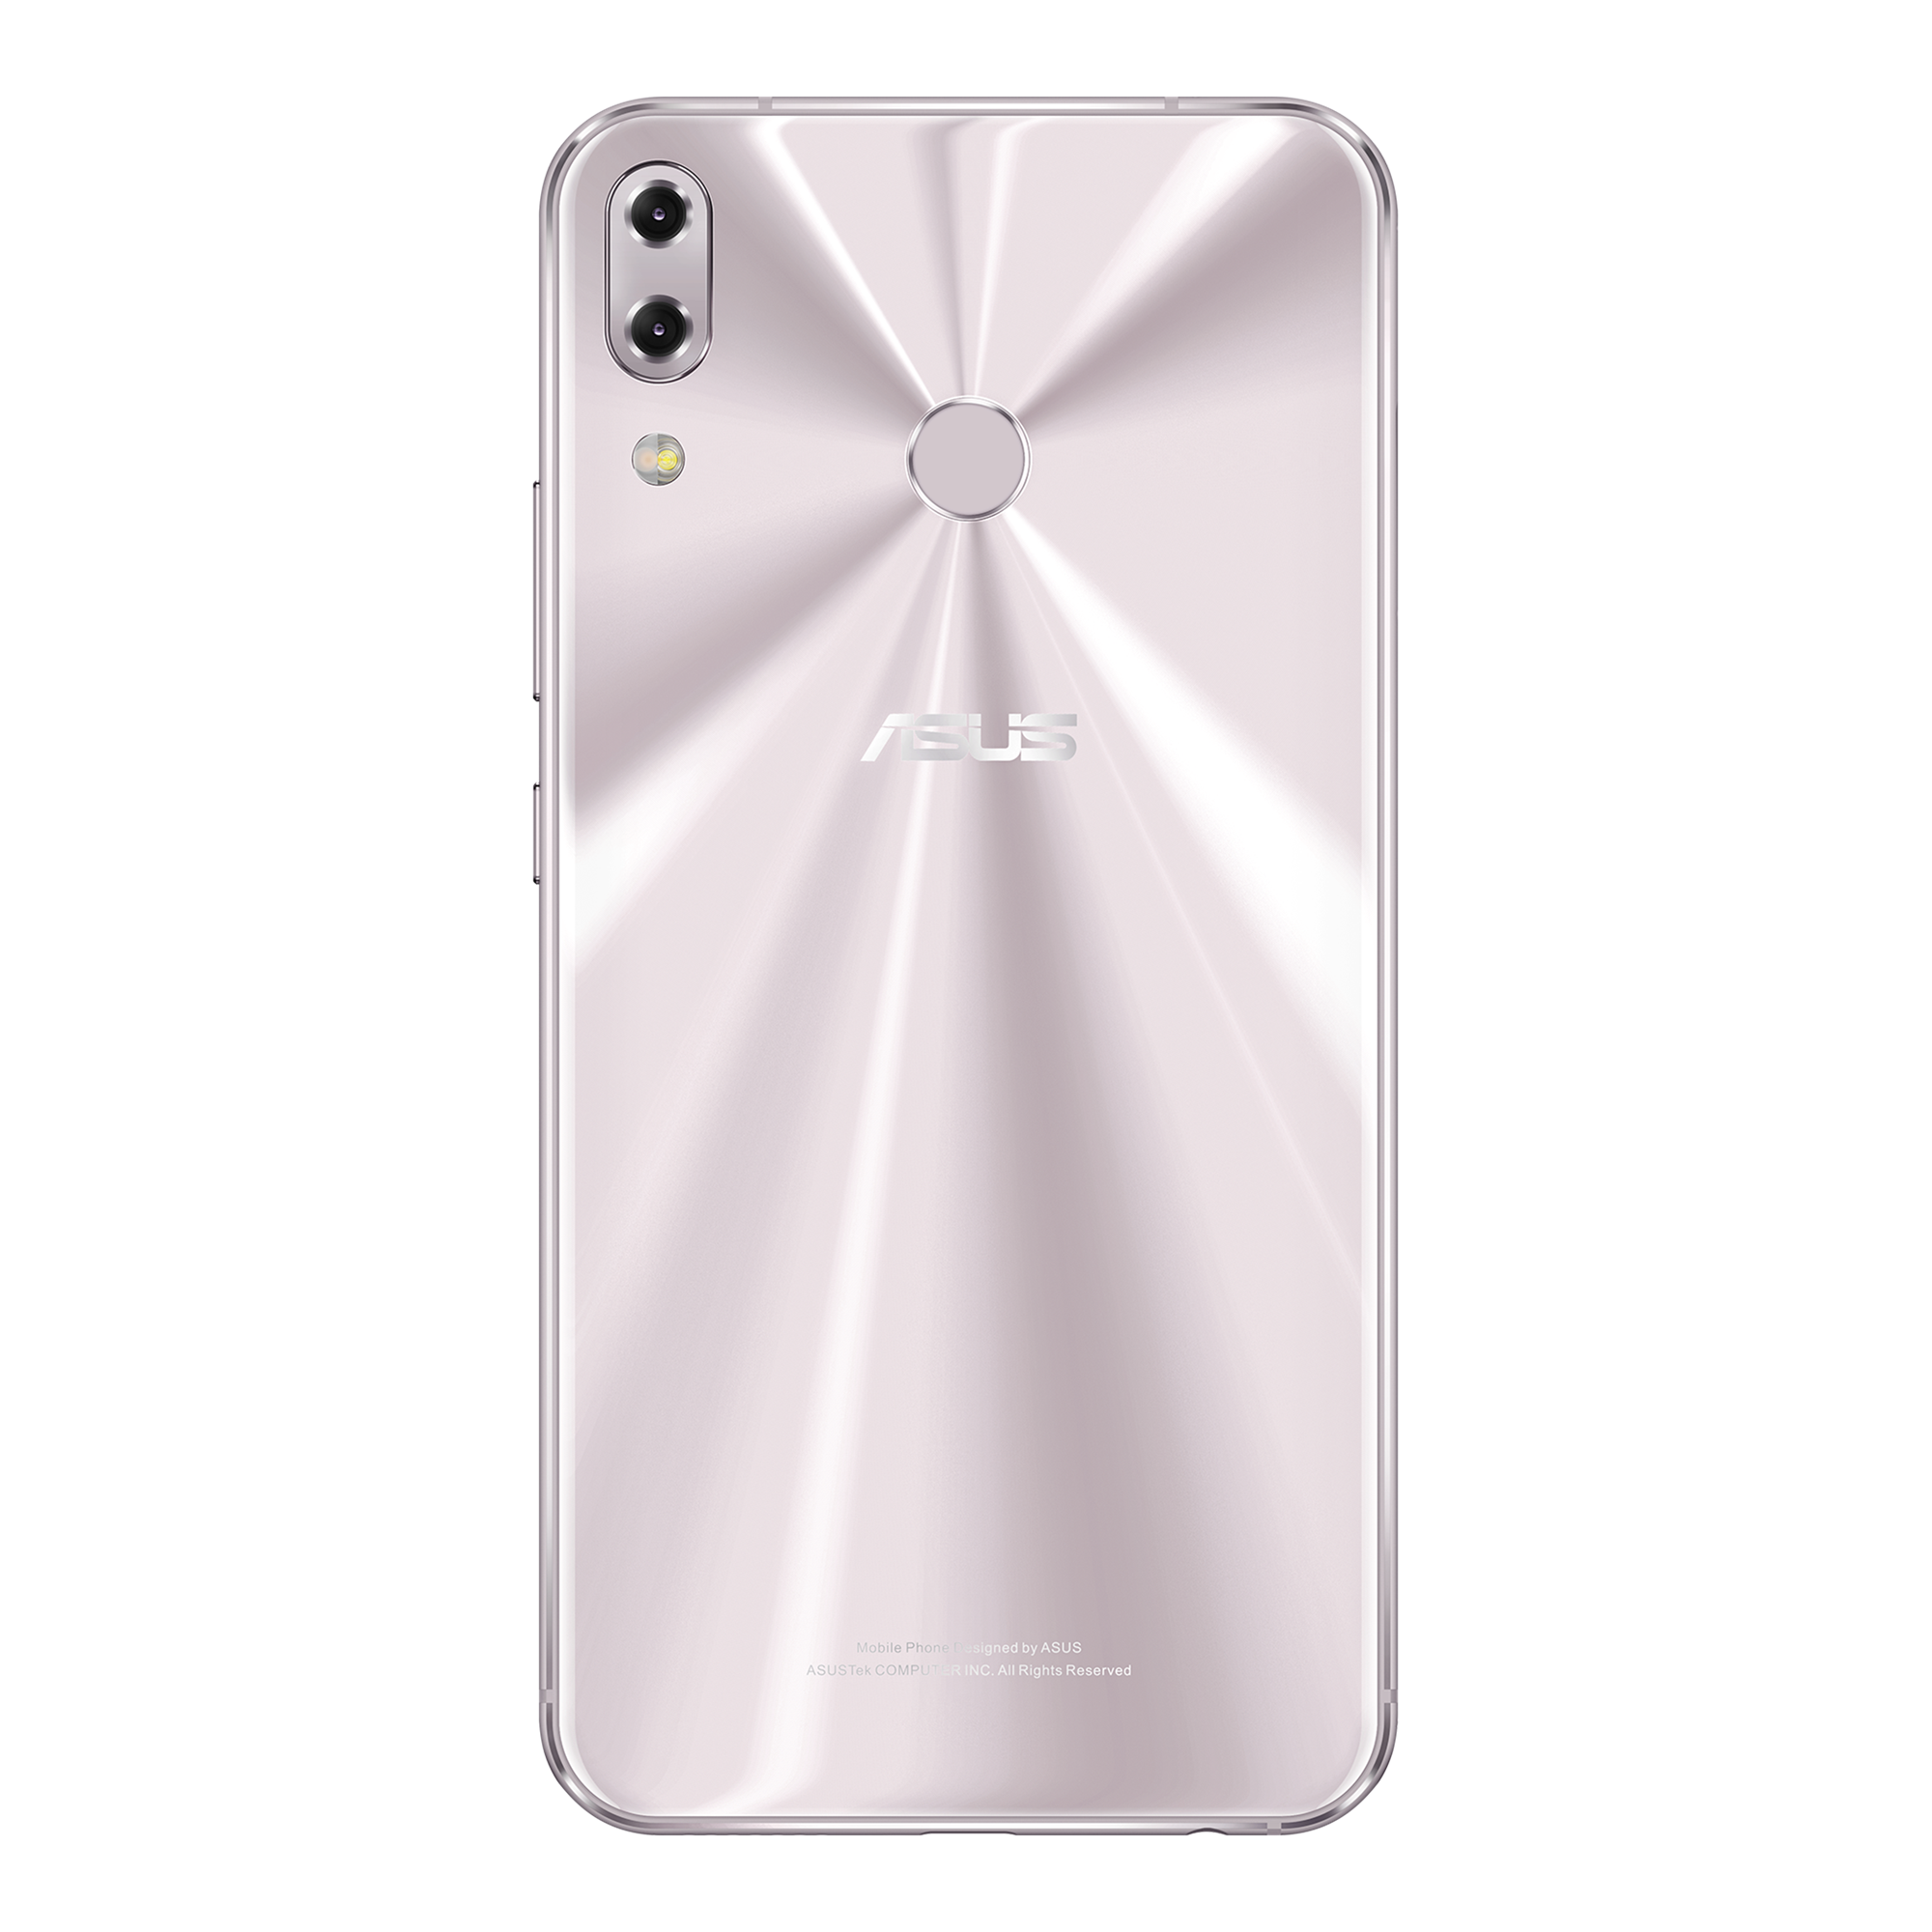 Zenfone 5z Phones Asus Global